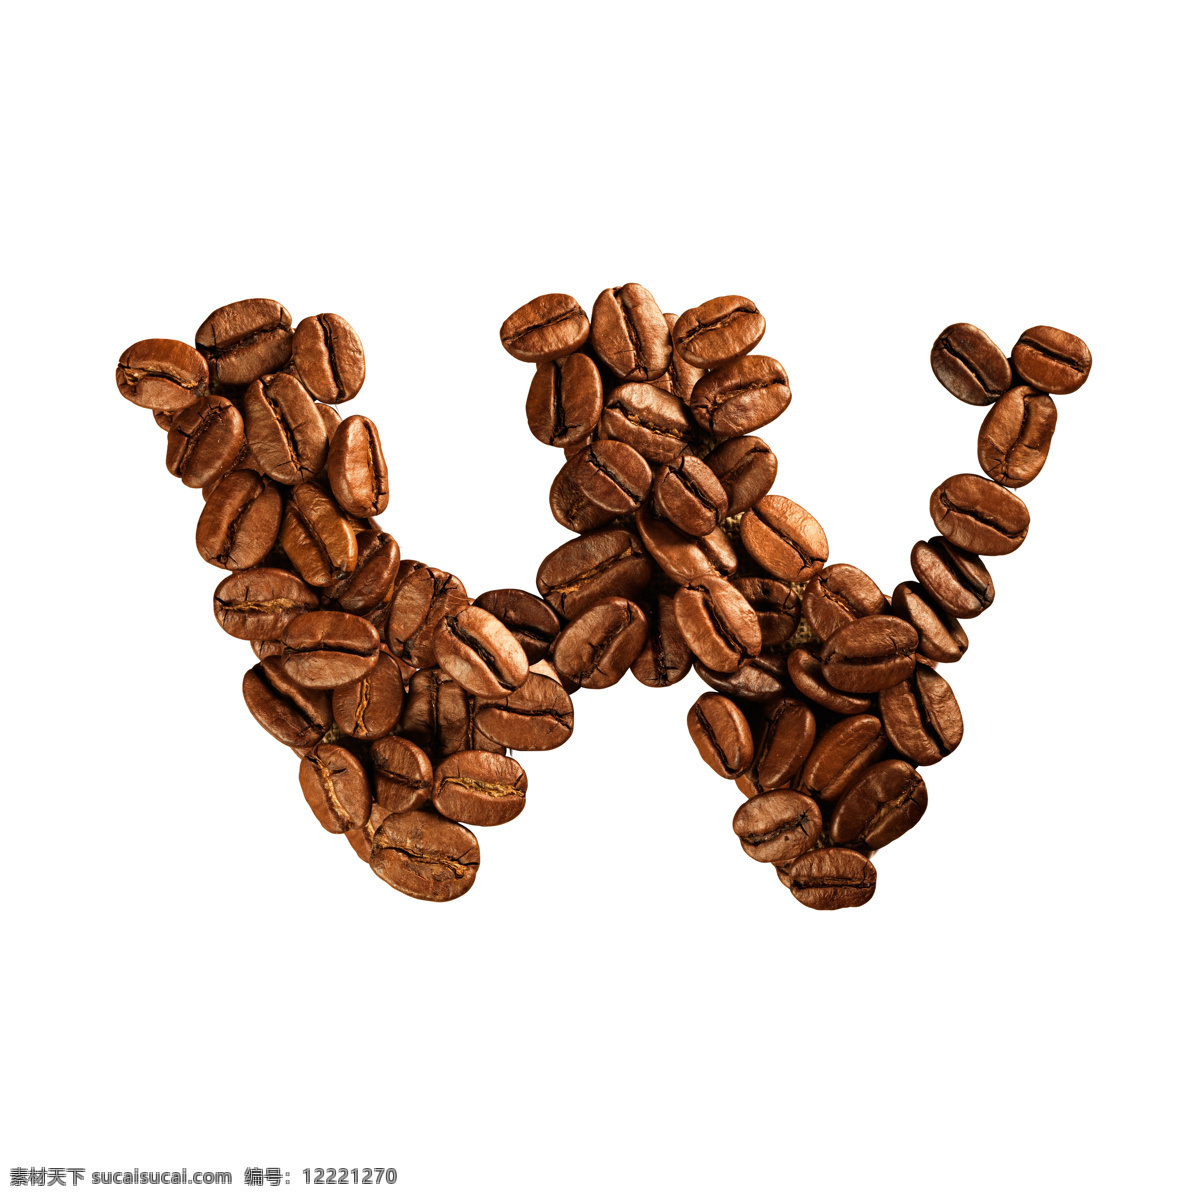 咖啡豆 组成 字母 w 咖啡 文字 艺术字体 食材原料 书画文字 文化艺术 白色